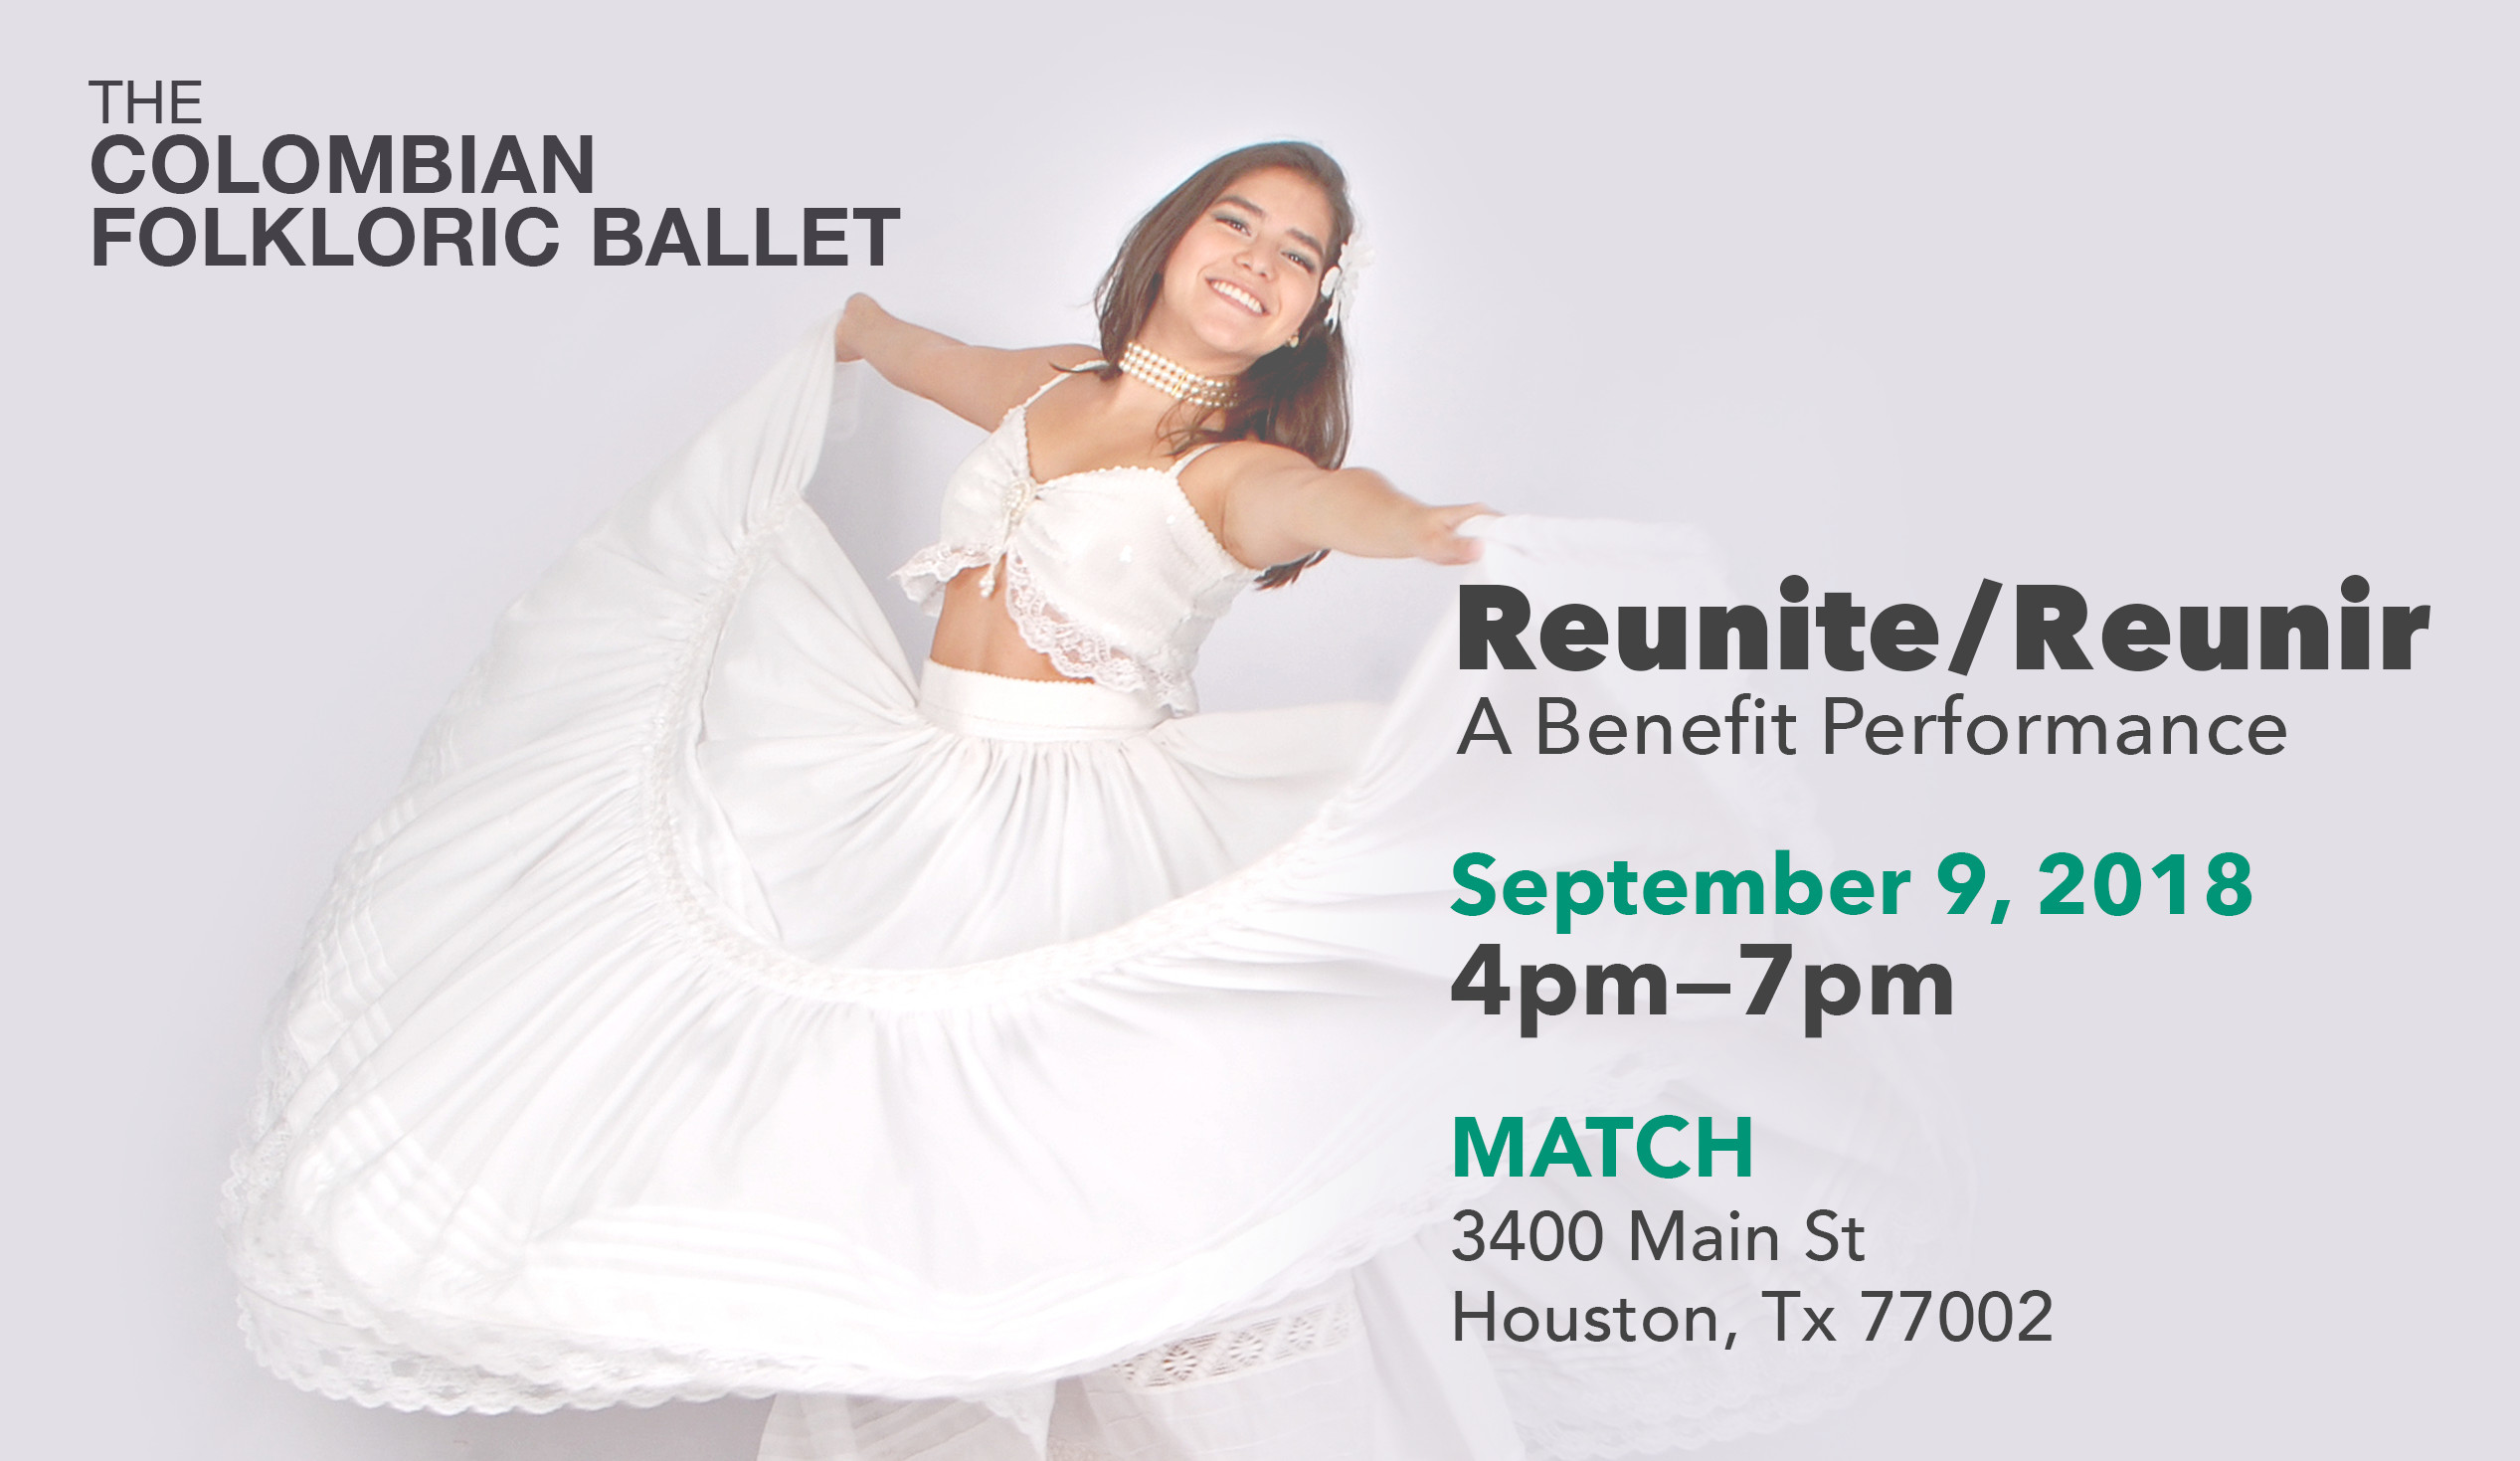 Reunite/Reunir: A Benefit Performance. September 9, 2018 4pm—7pm. MATCH 3400 Main St Houston, Tx 77002